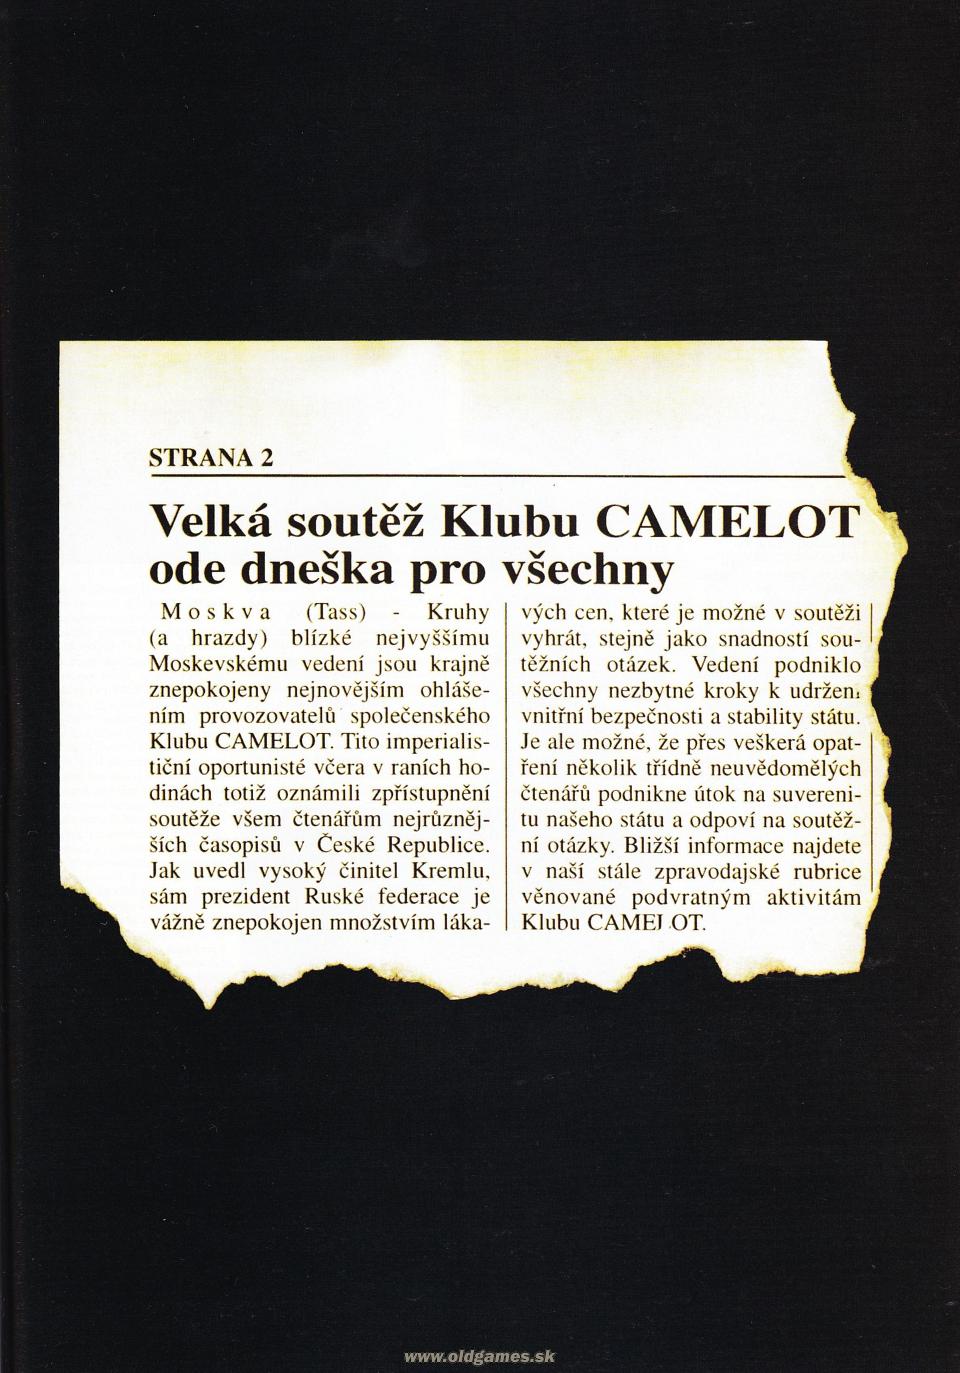 Camelot Klub - Soutěž